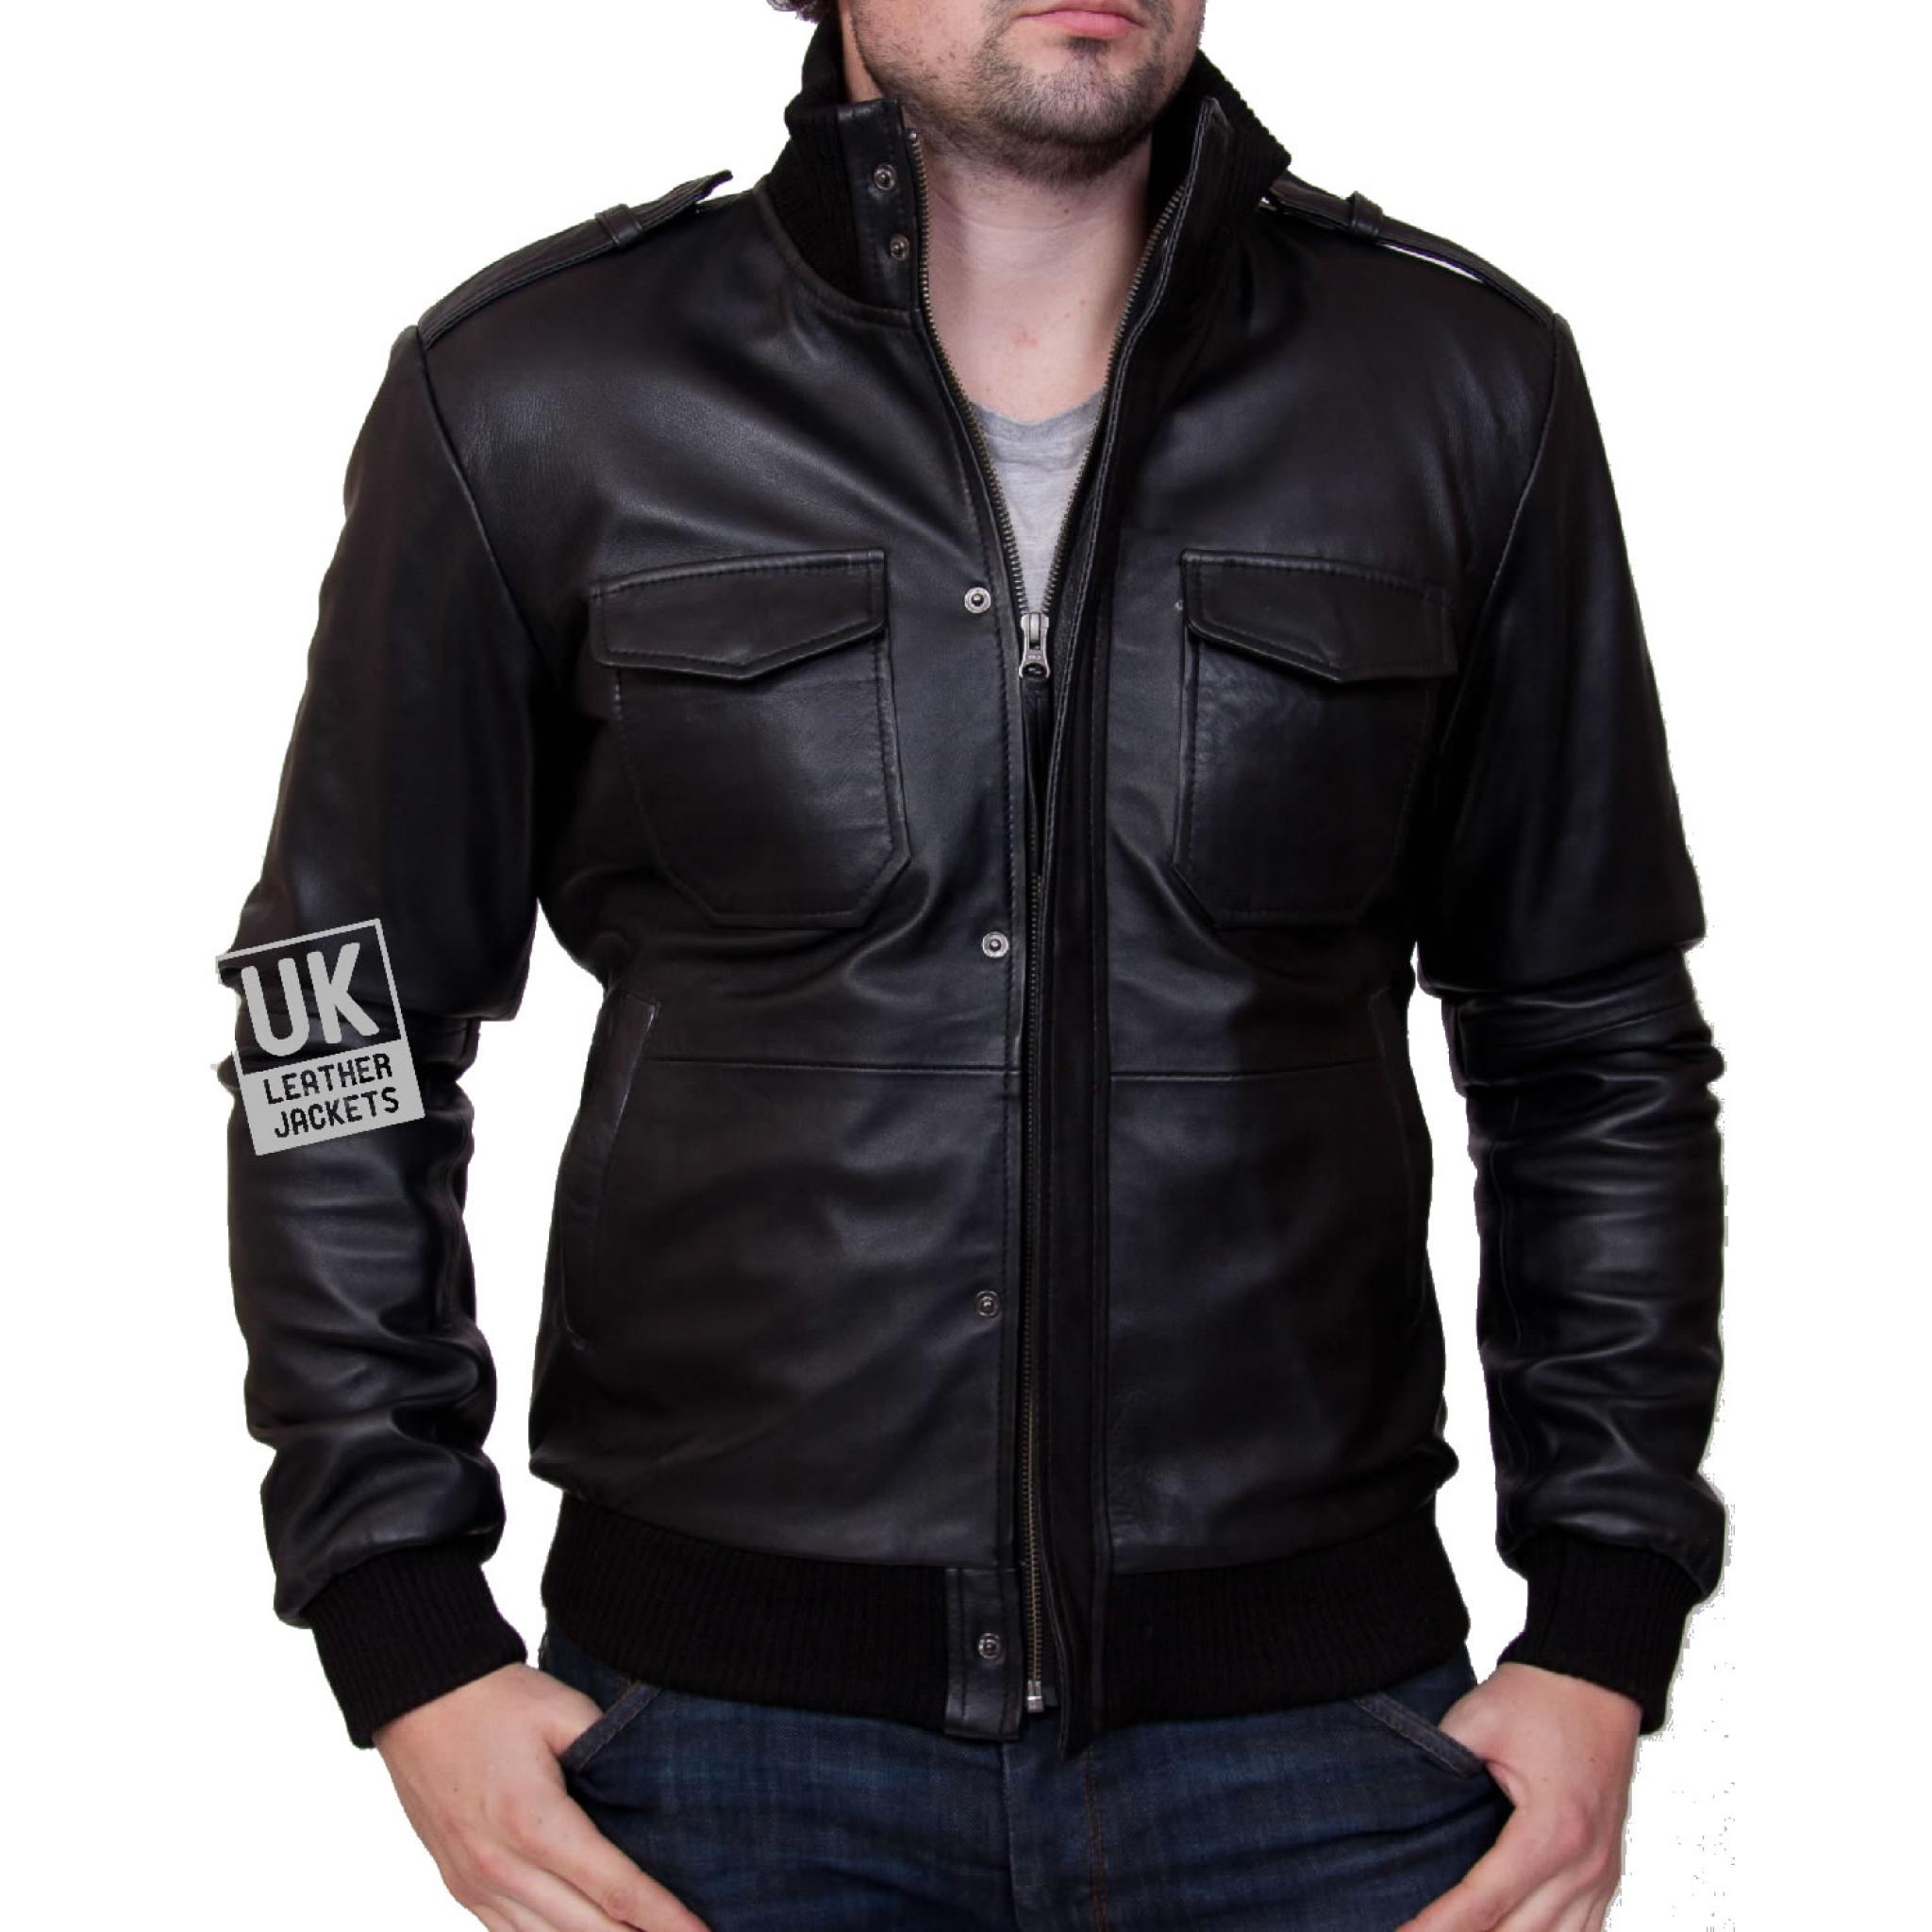 Mens Black Leather Bomber Jacket - Pinnacle | UK Leather Jackets